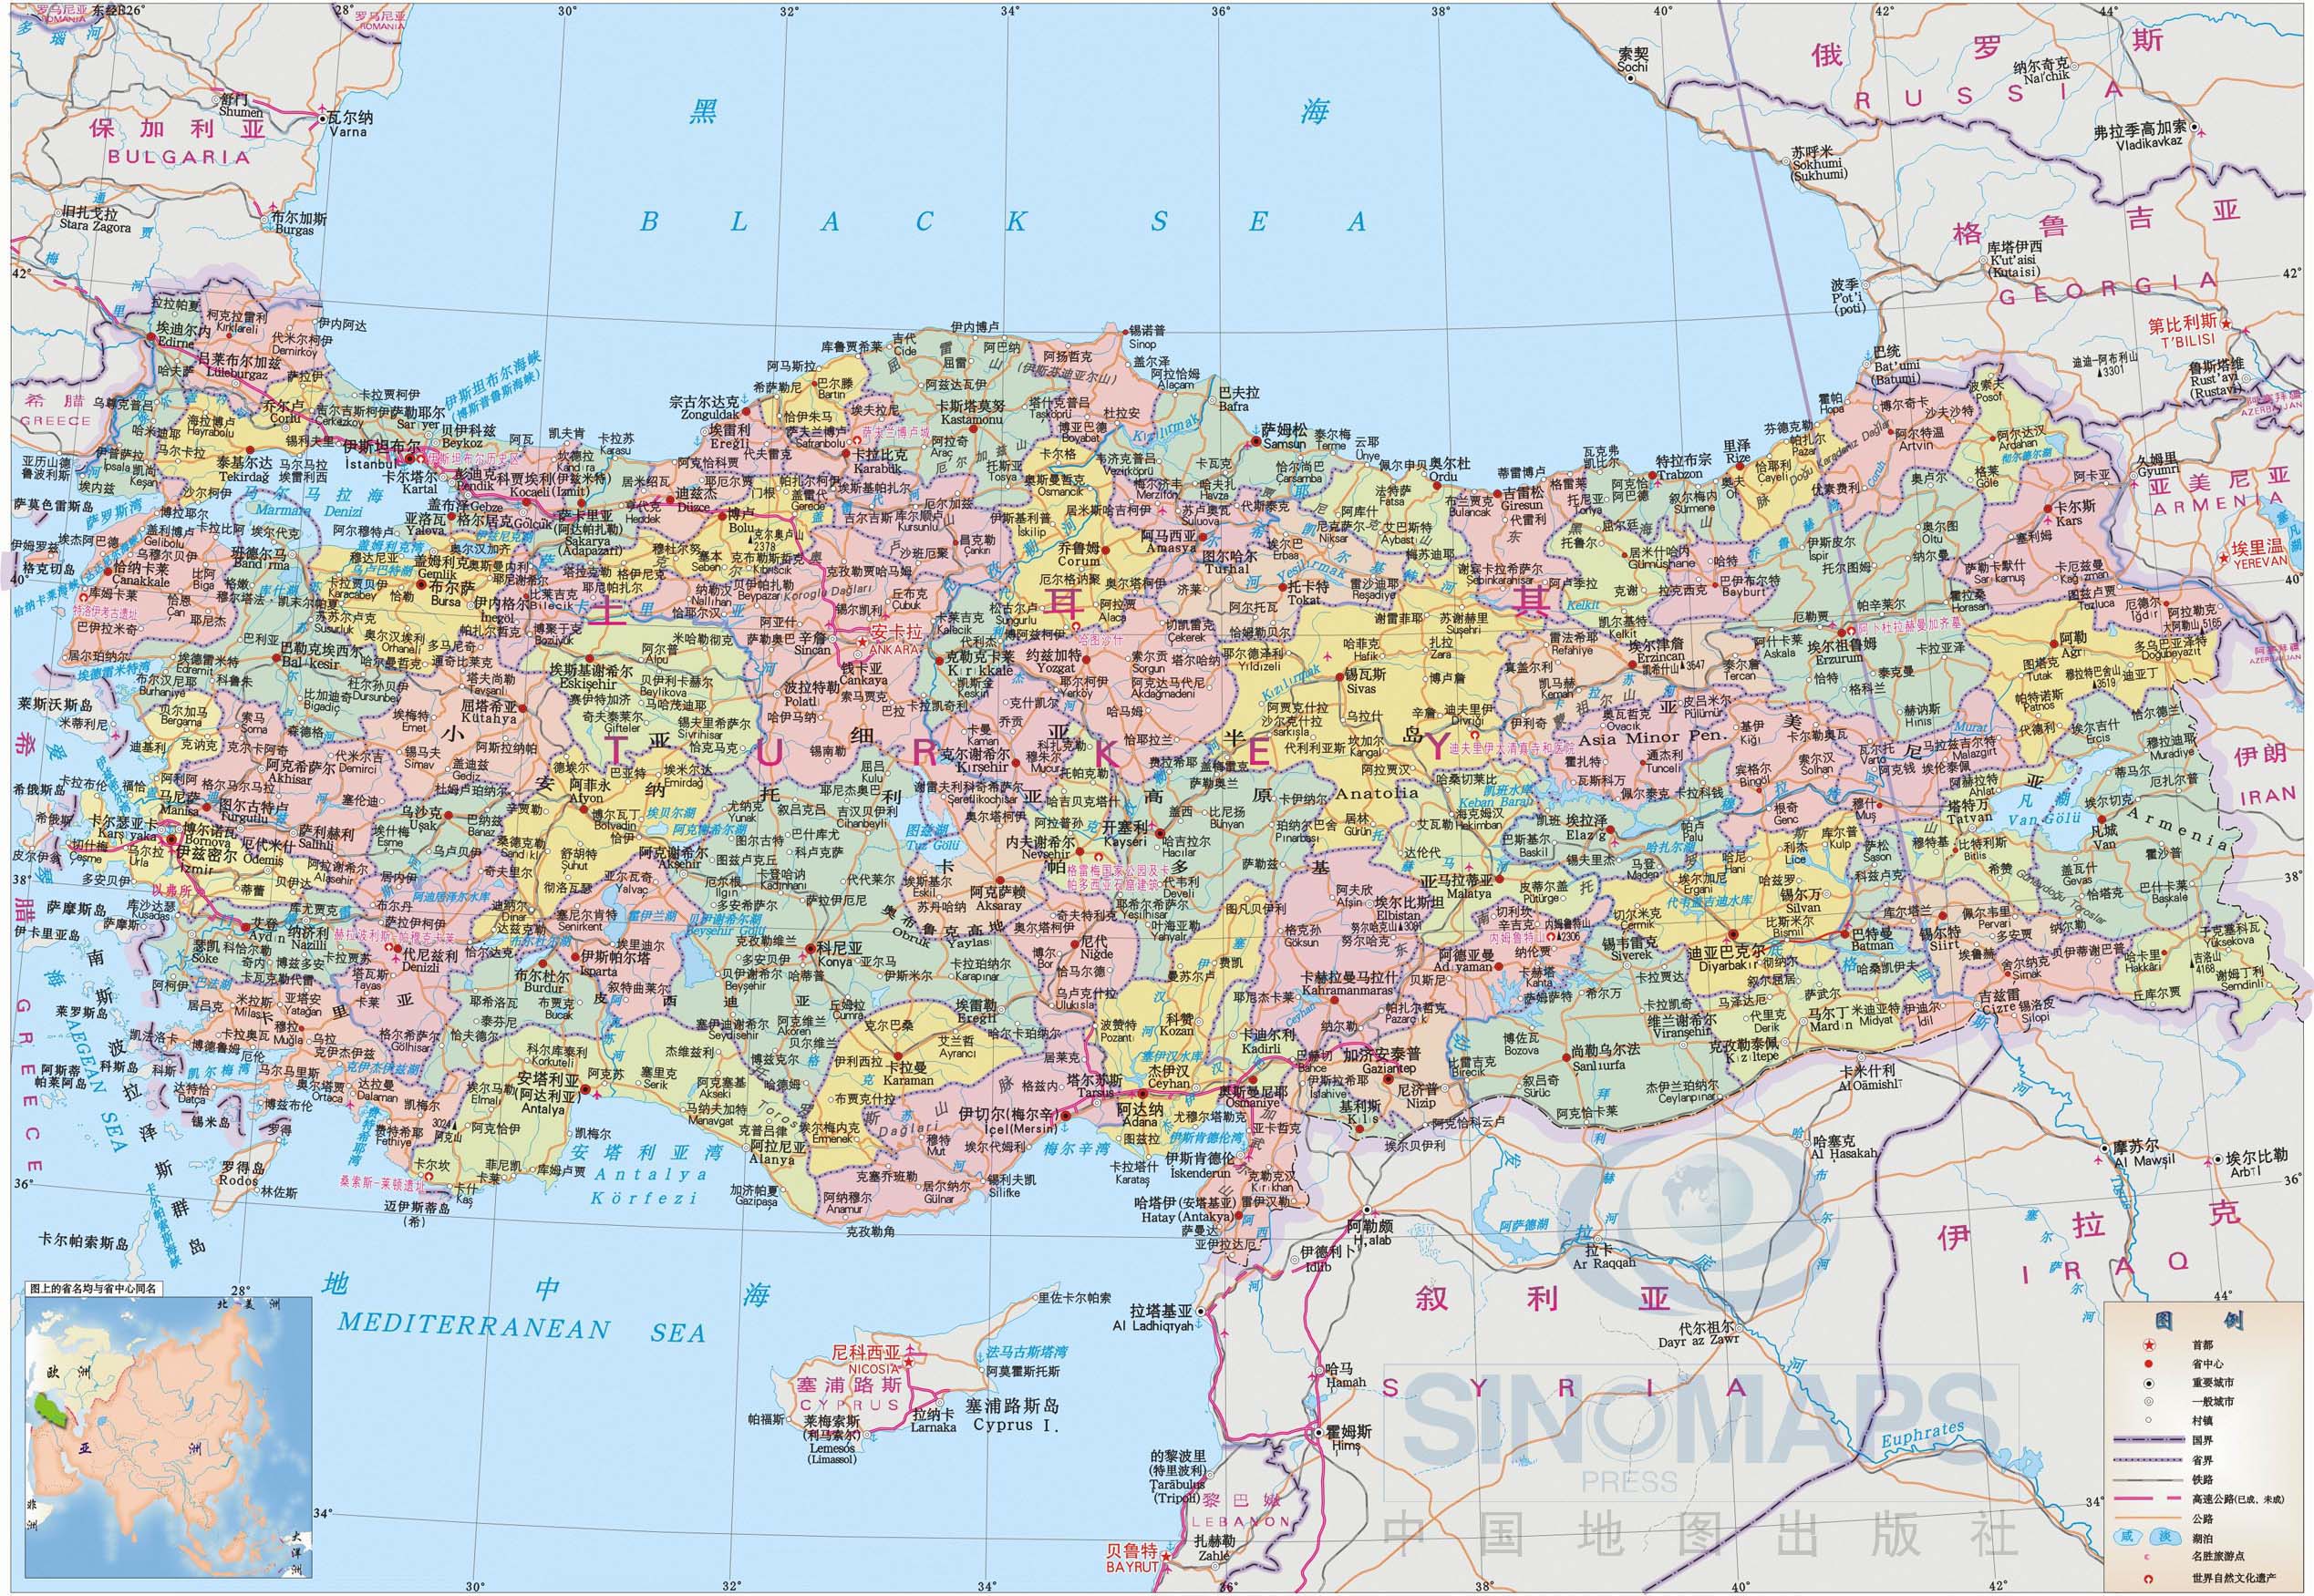 土耳其地图 - 土耳其地图高清版 - 土耳其地图中文版